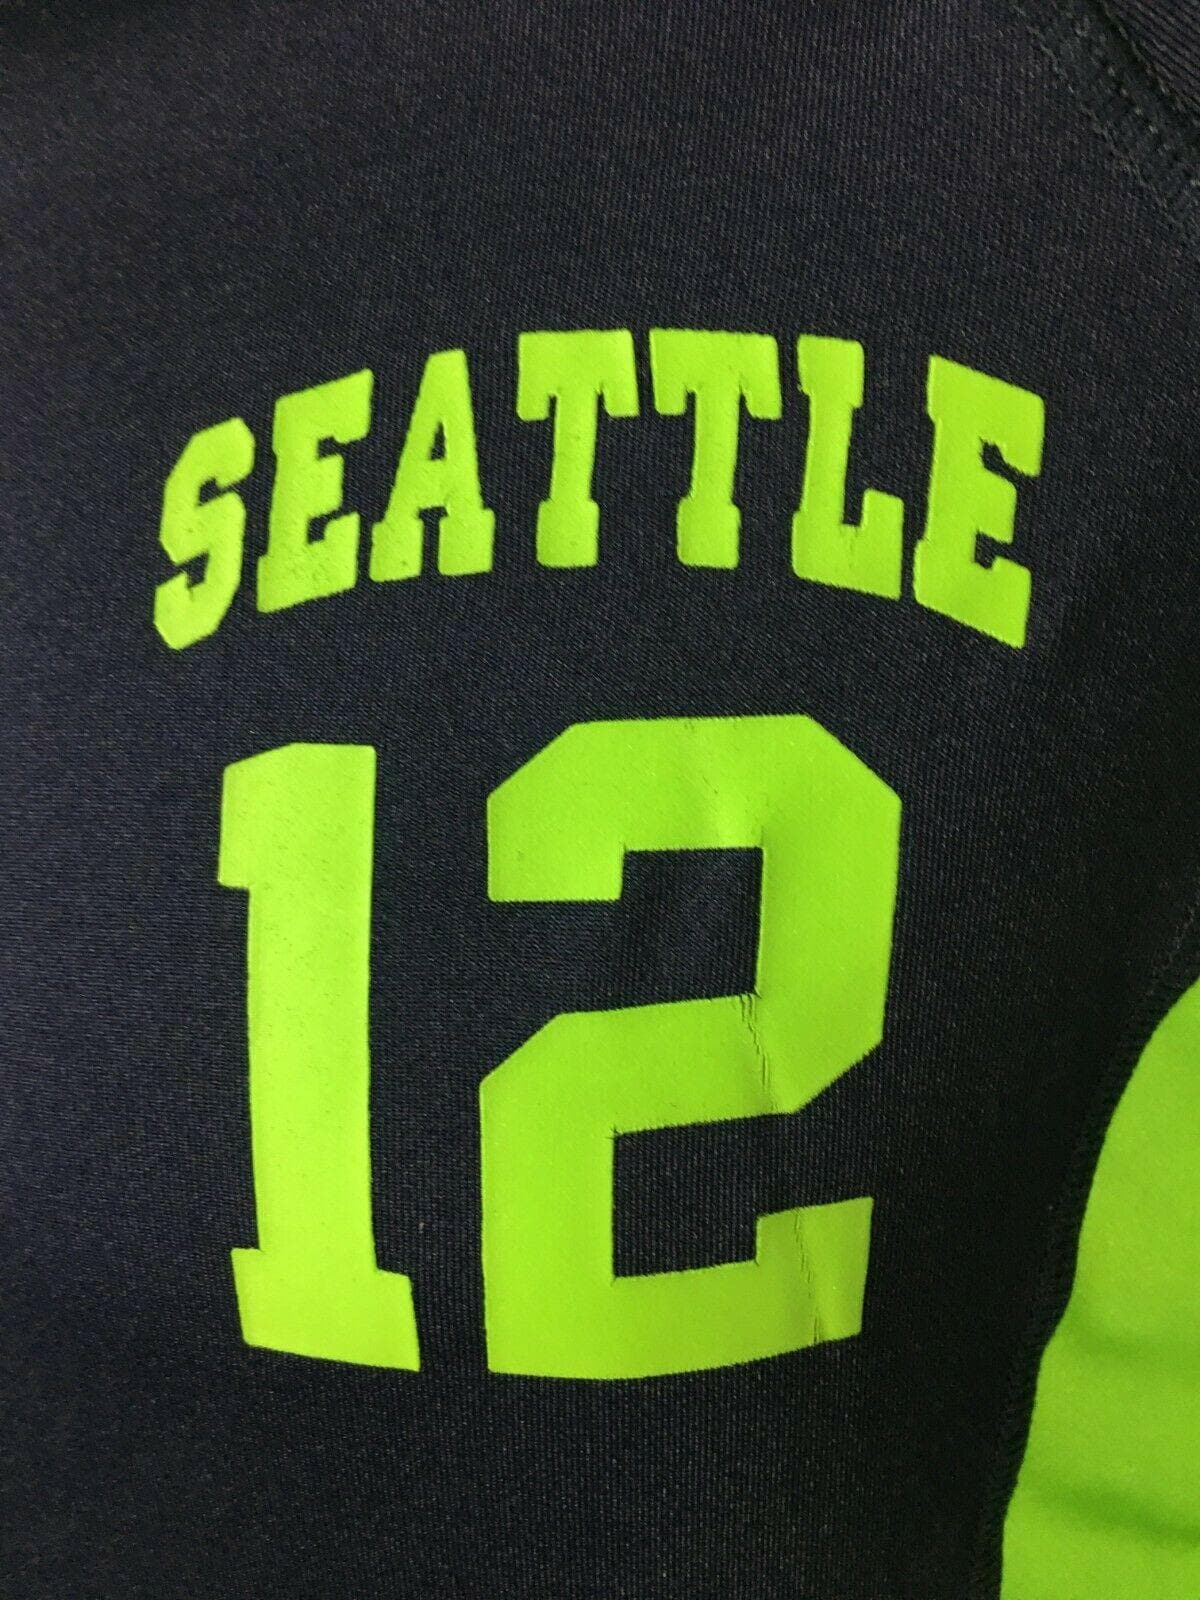 NFL Seattle Seahawks "Seattle" Track Jacket Women's X-Small